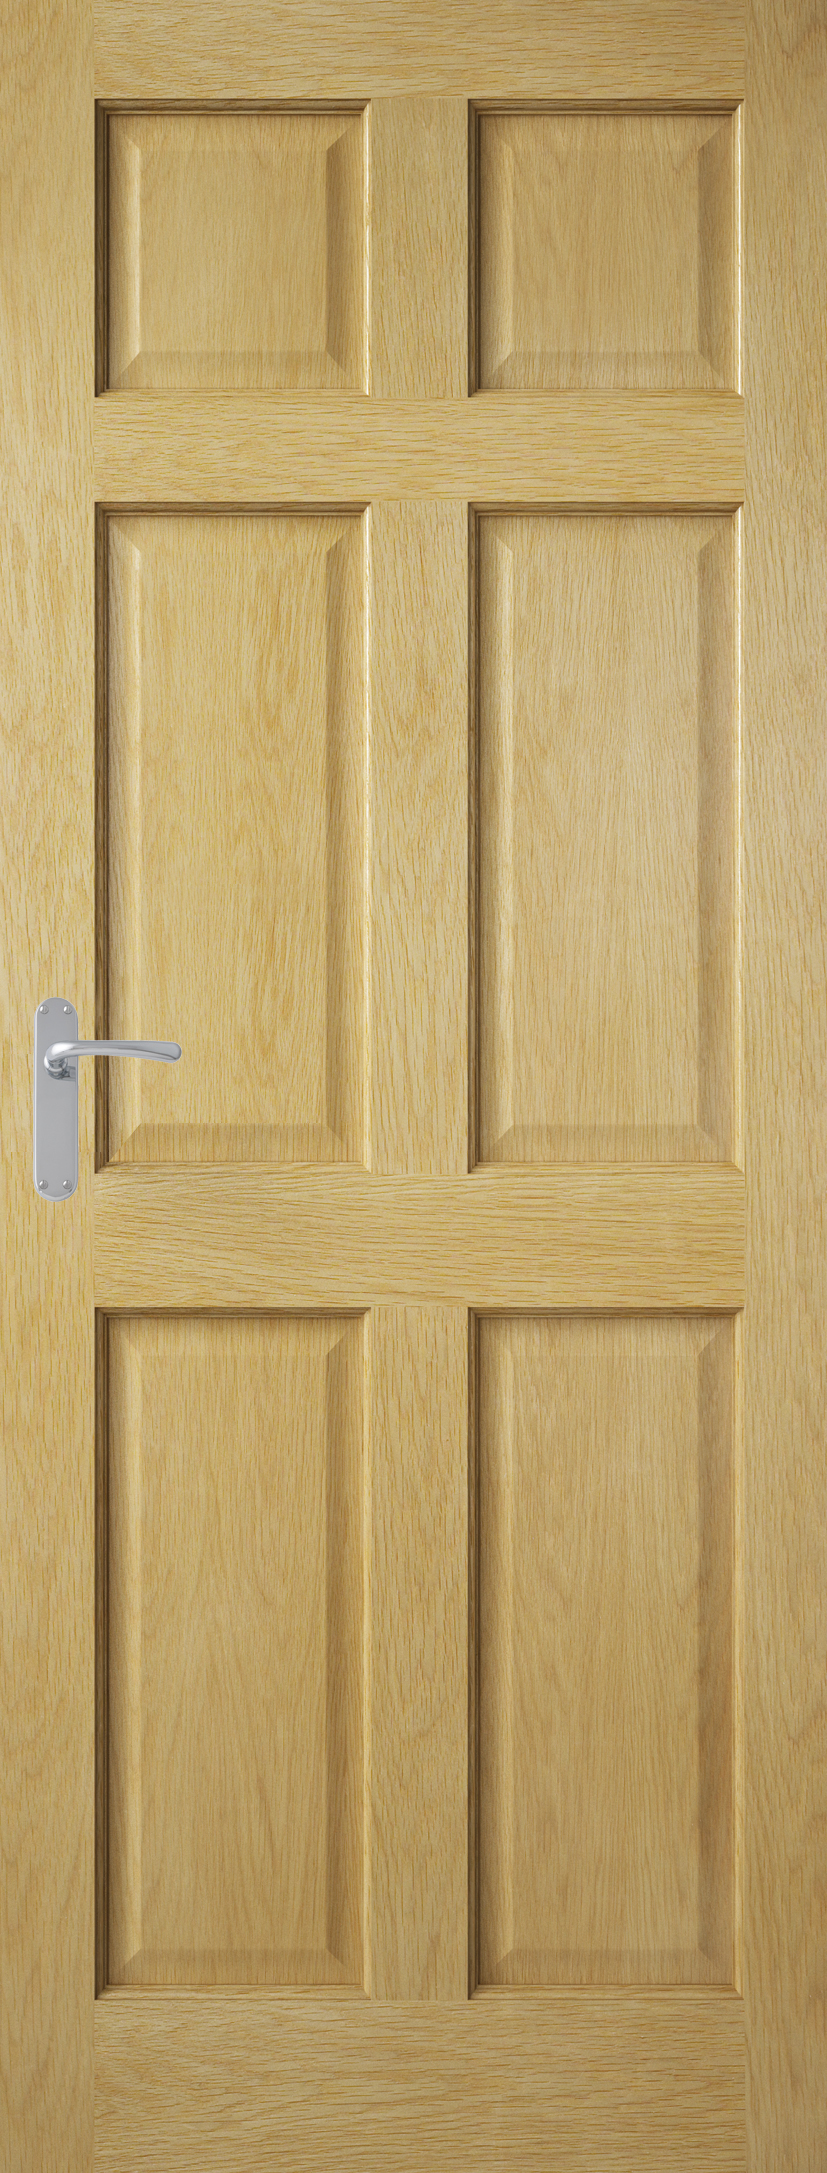 6 Panel Oak Veneer Engineered Door hardwood internal